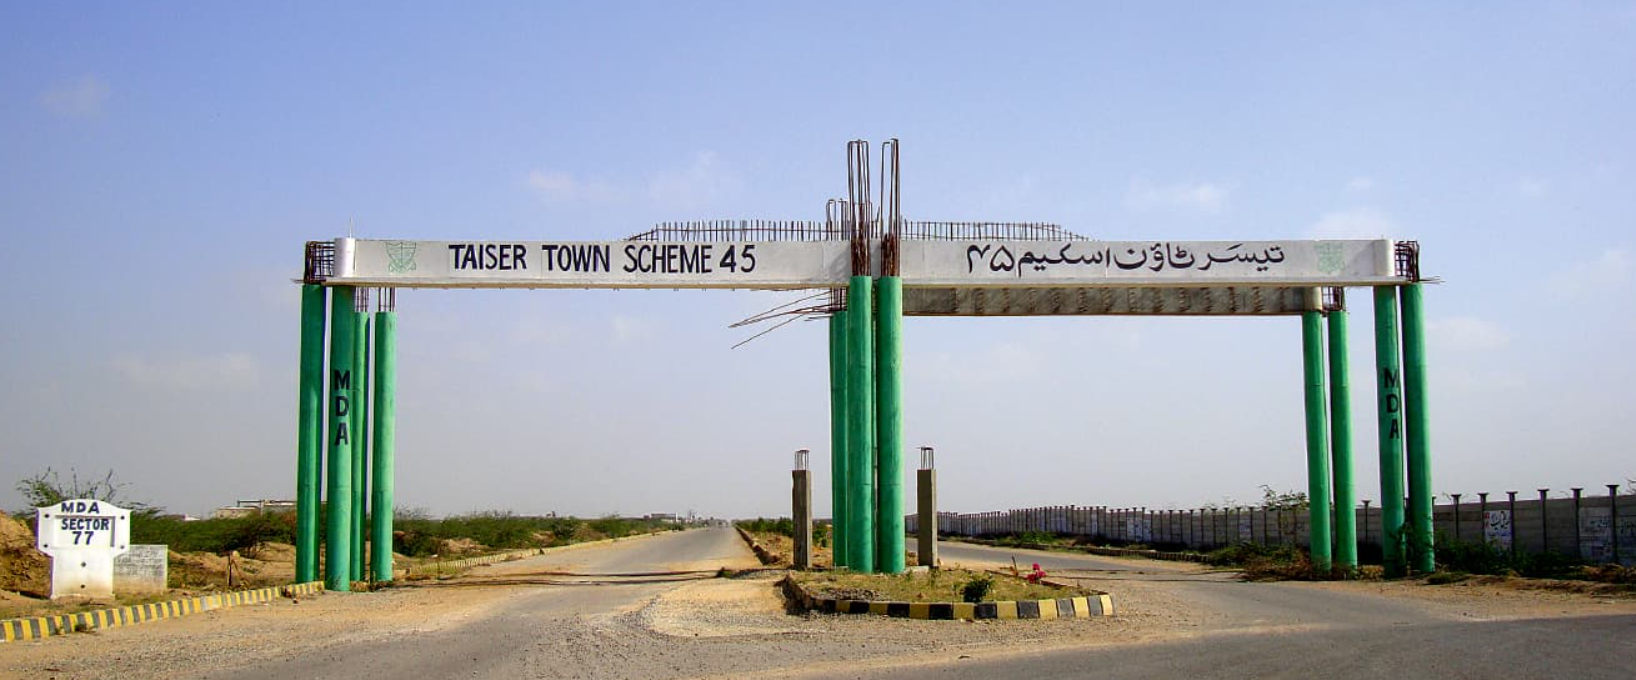 taiser town karachi